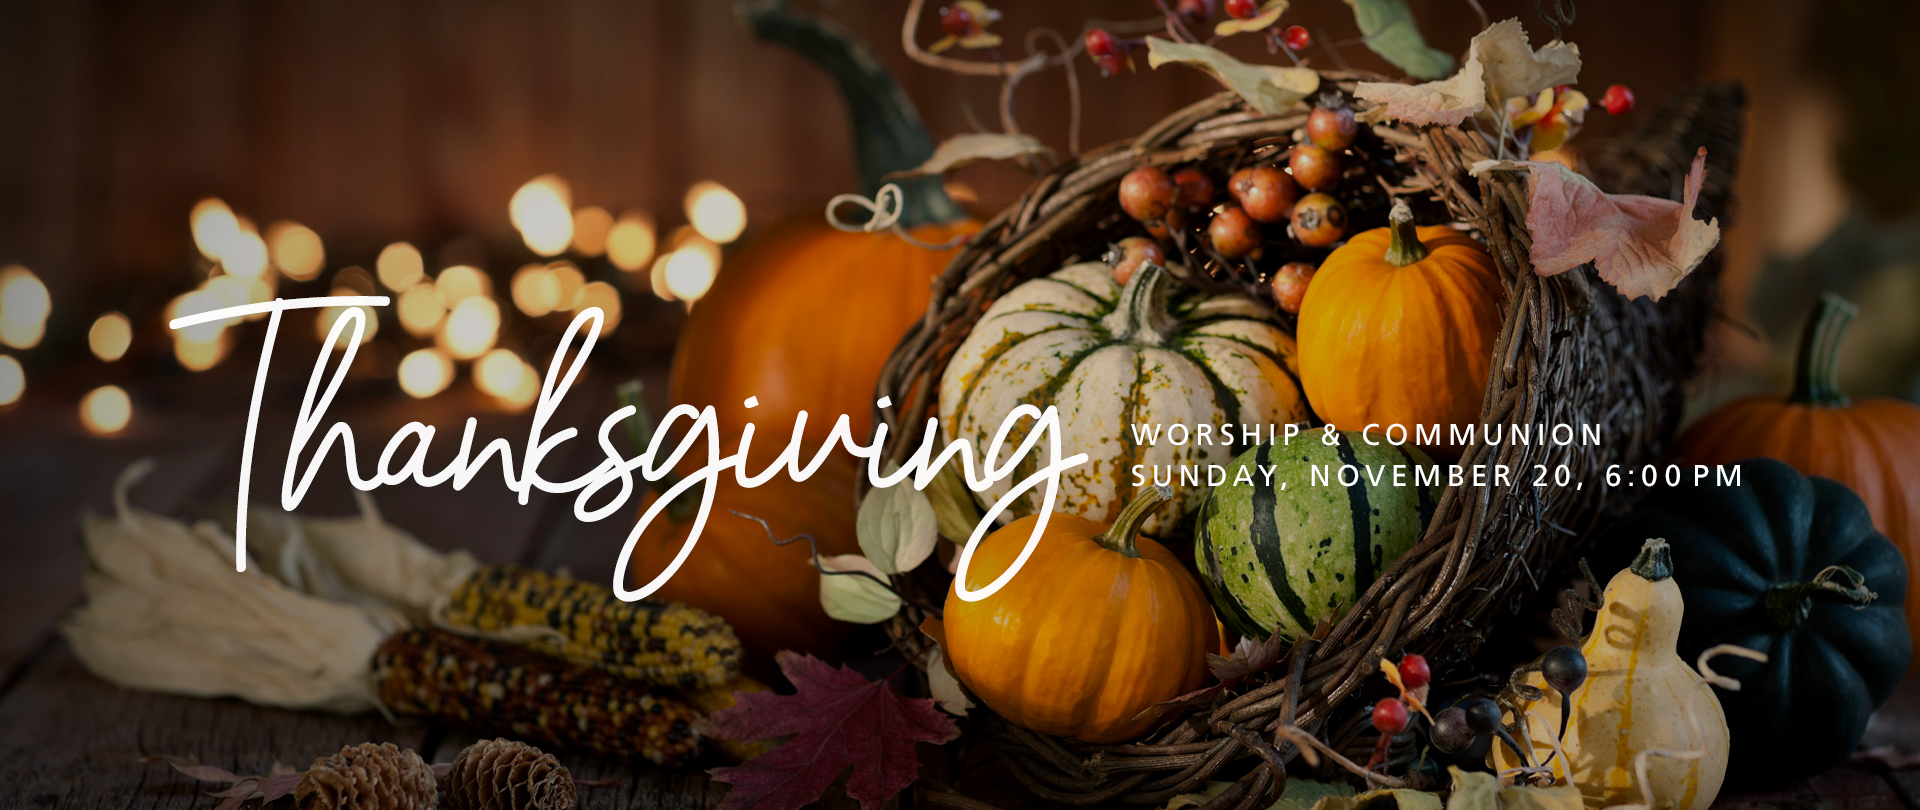 Thanksgiving Service
Sunday, November 20 at 6:00 PM
